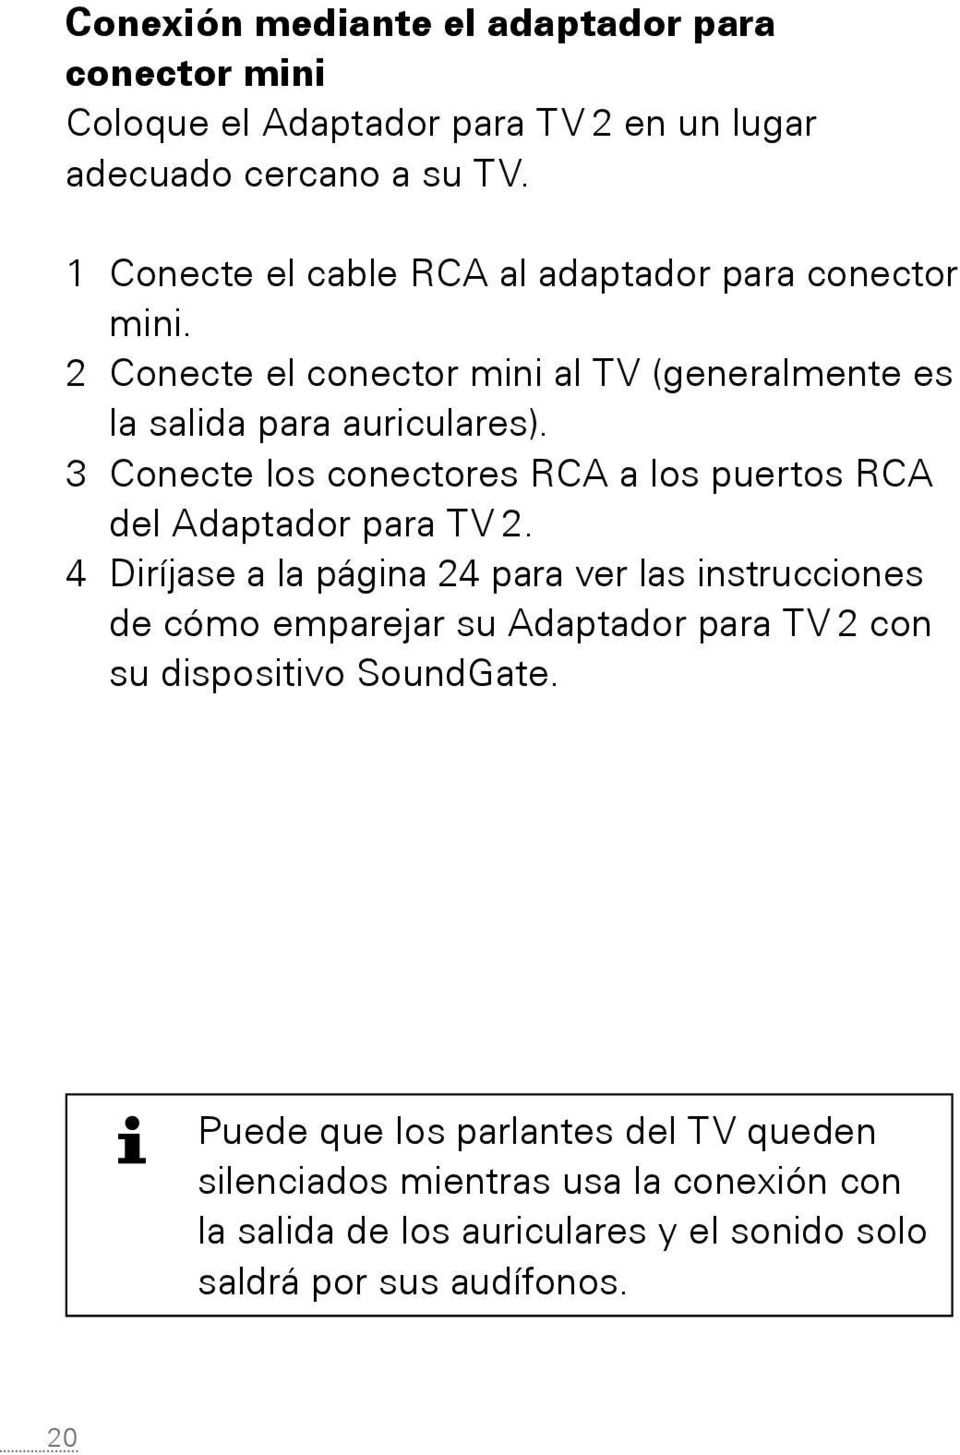 3 Conecte los conectores RCA a los puertos RCA del Adaptador para TV 2.